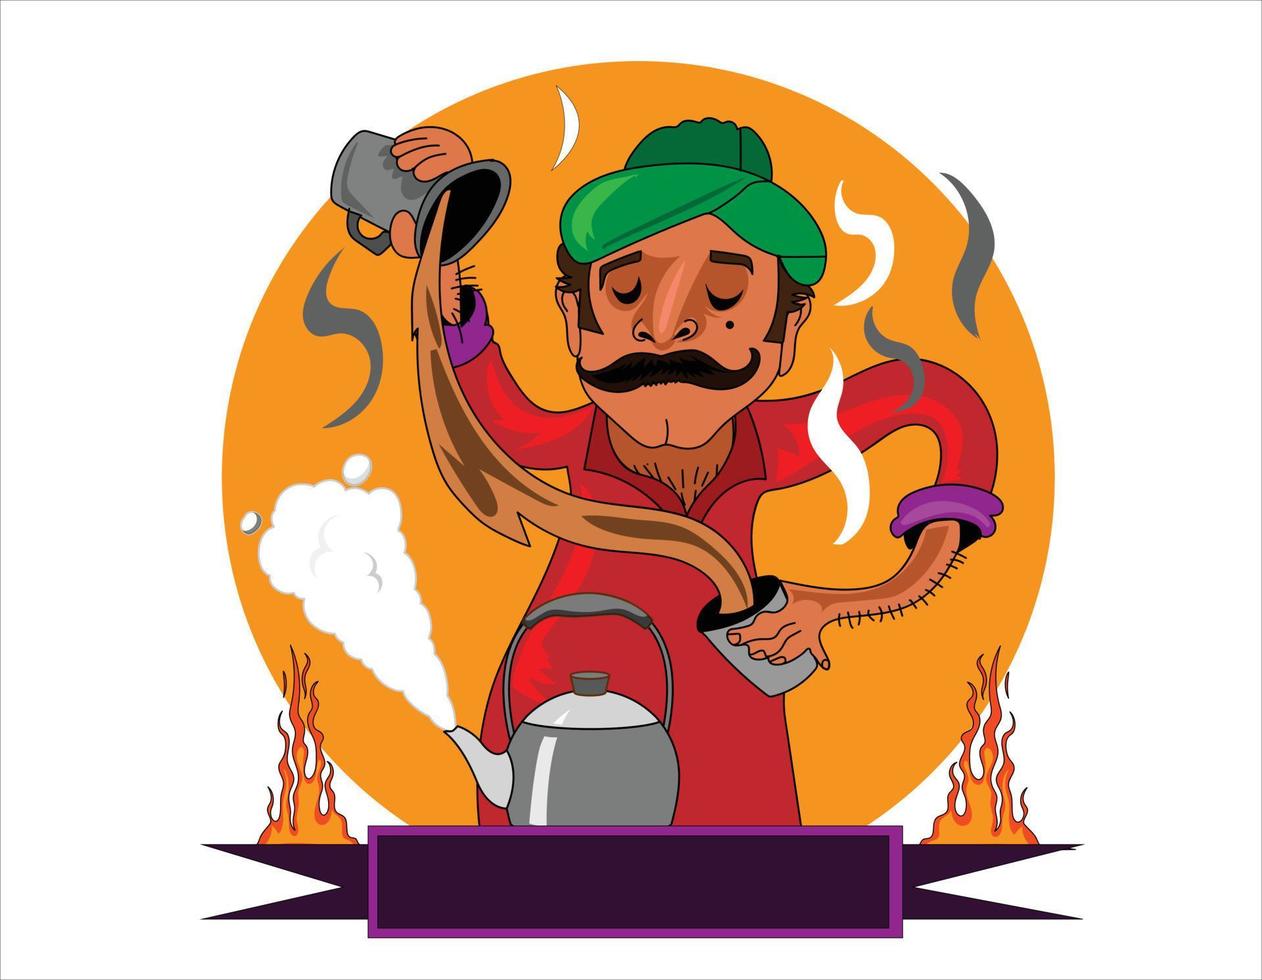 chai wala personaje de dibujos animados indio, vendedor de té callejero paquistaní vector